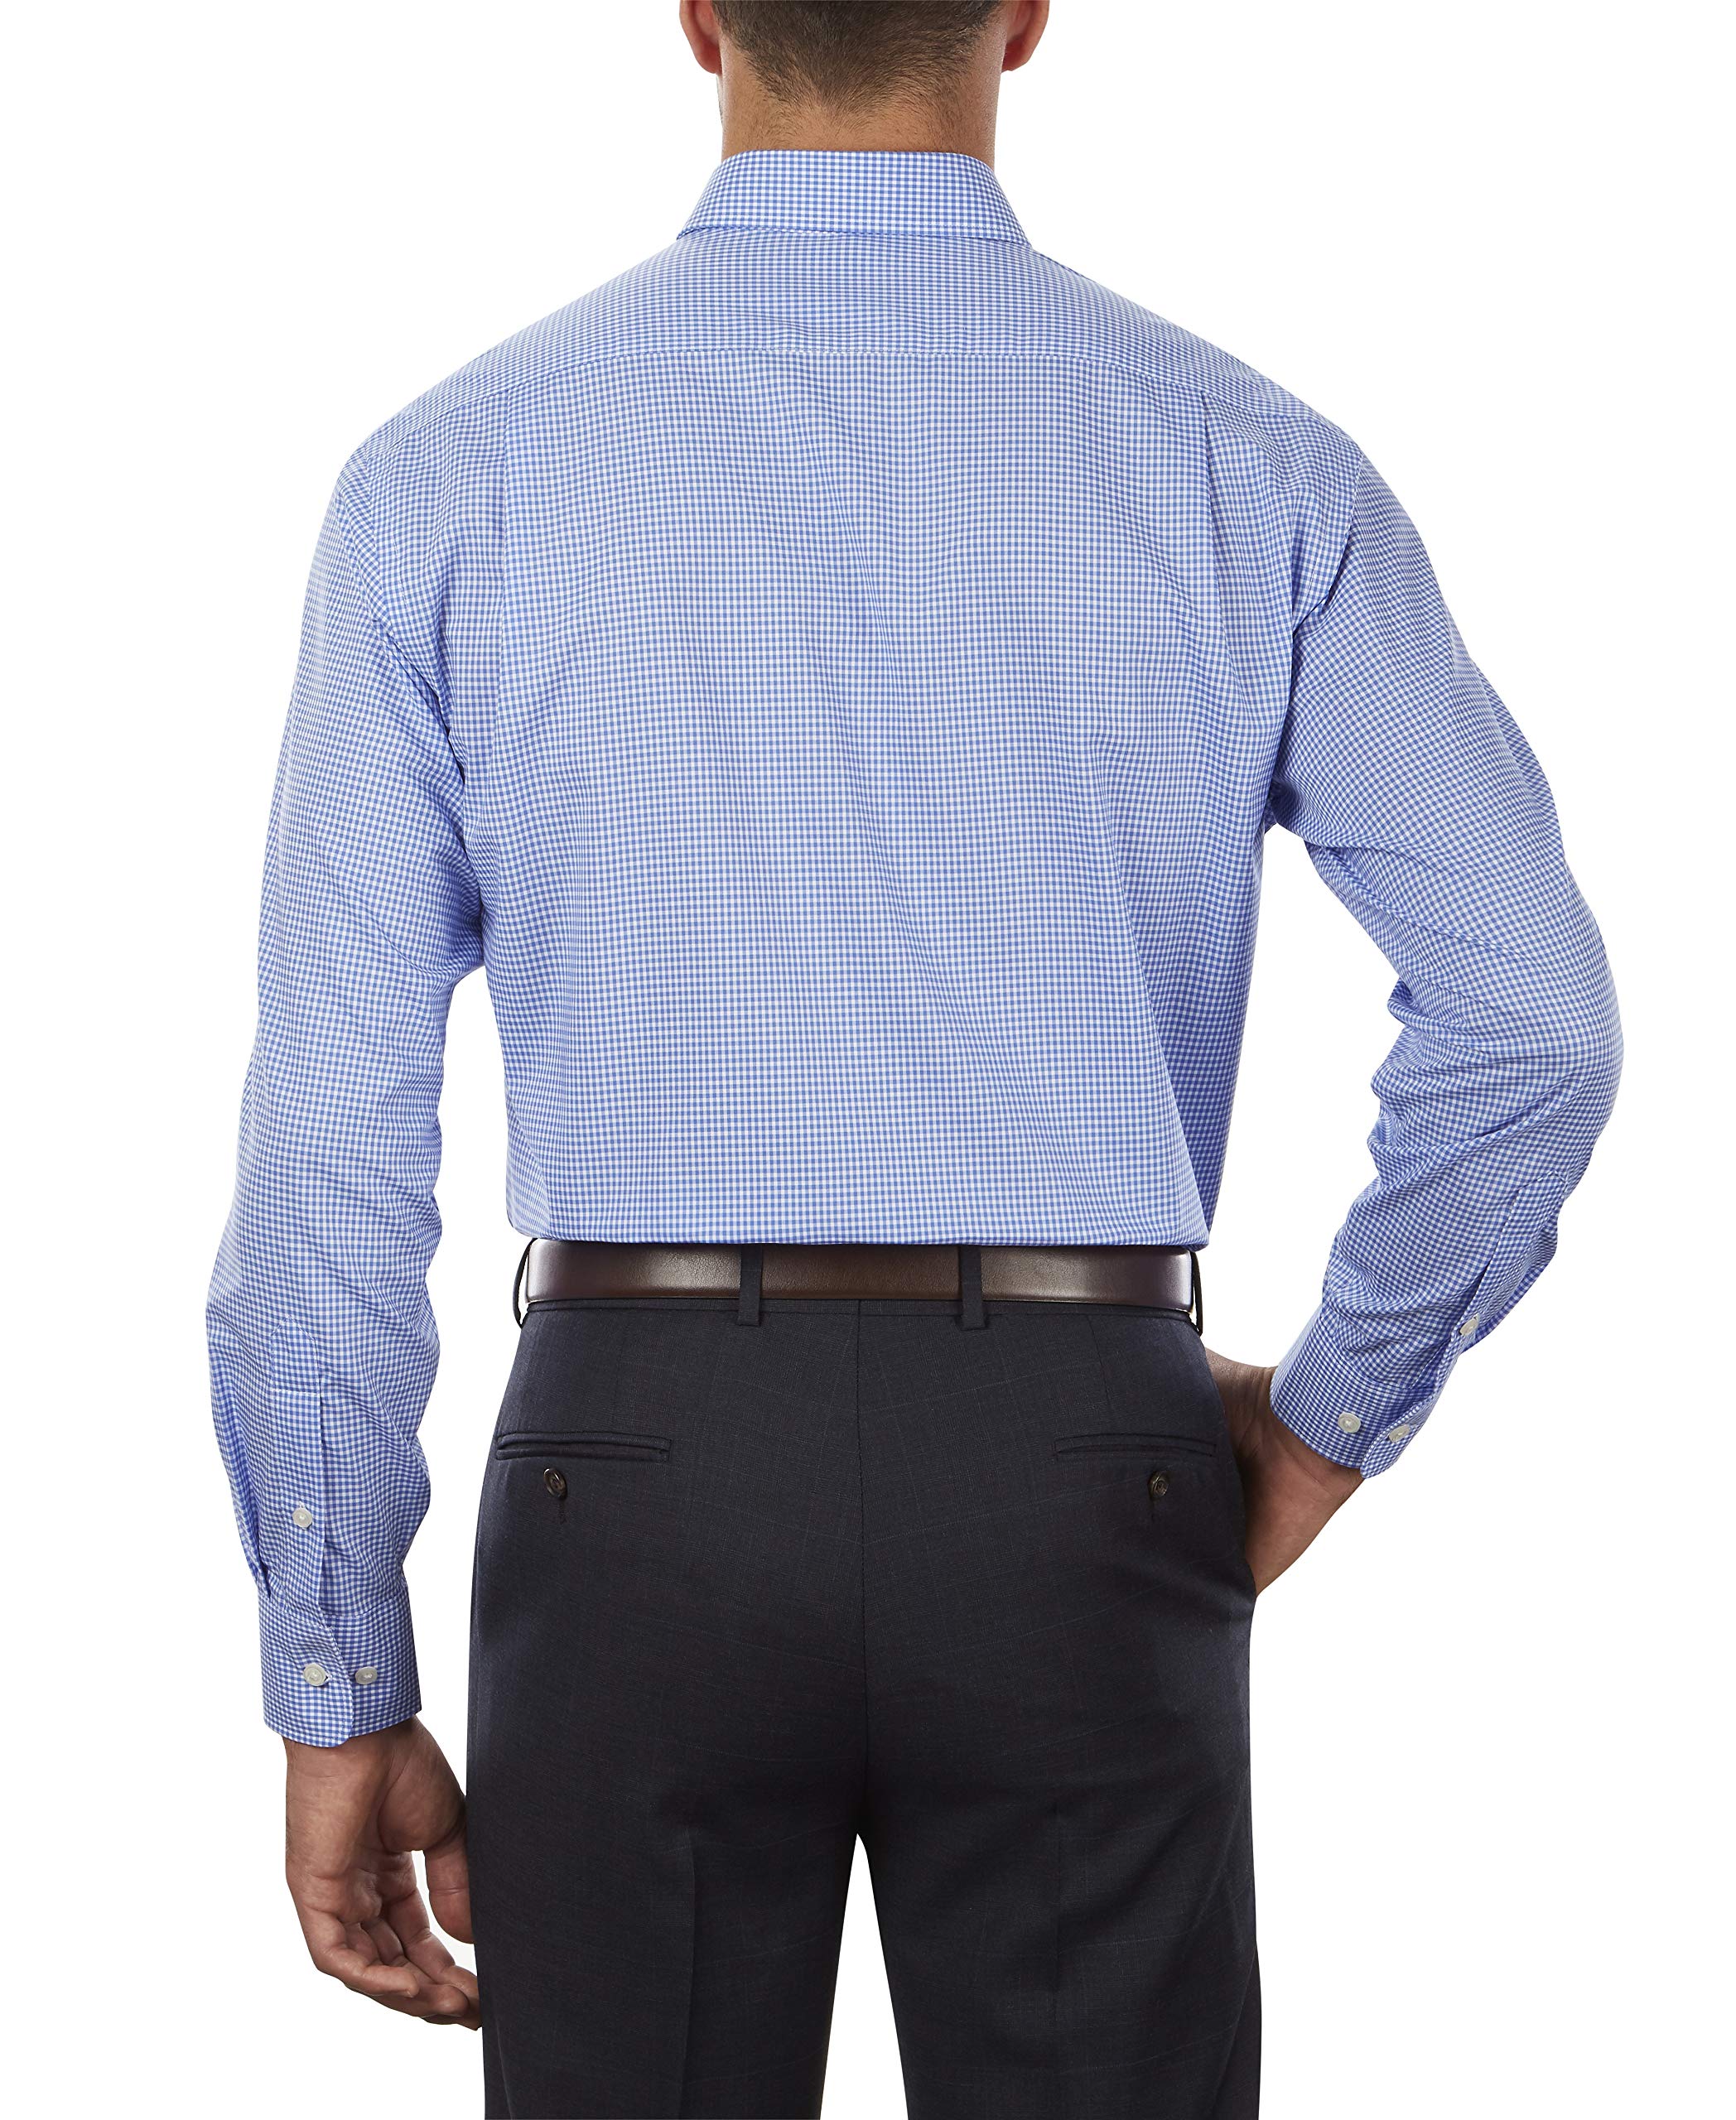 Tommy Hilfiger Men's Dress Shirt Regular Fit Non Iron Gingham